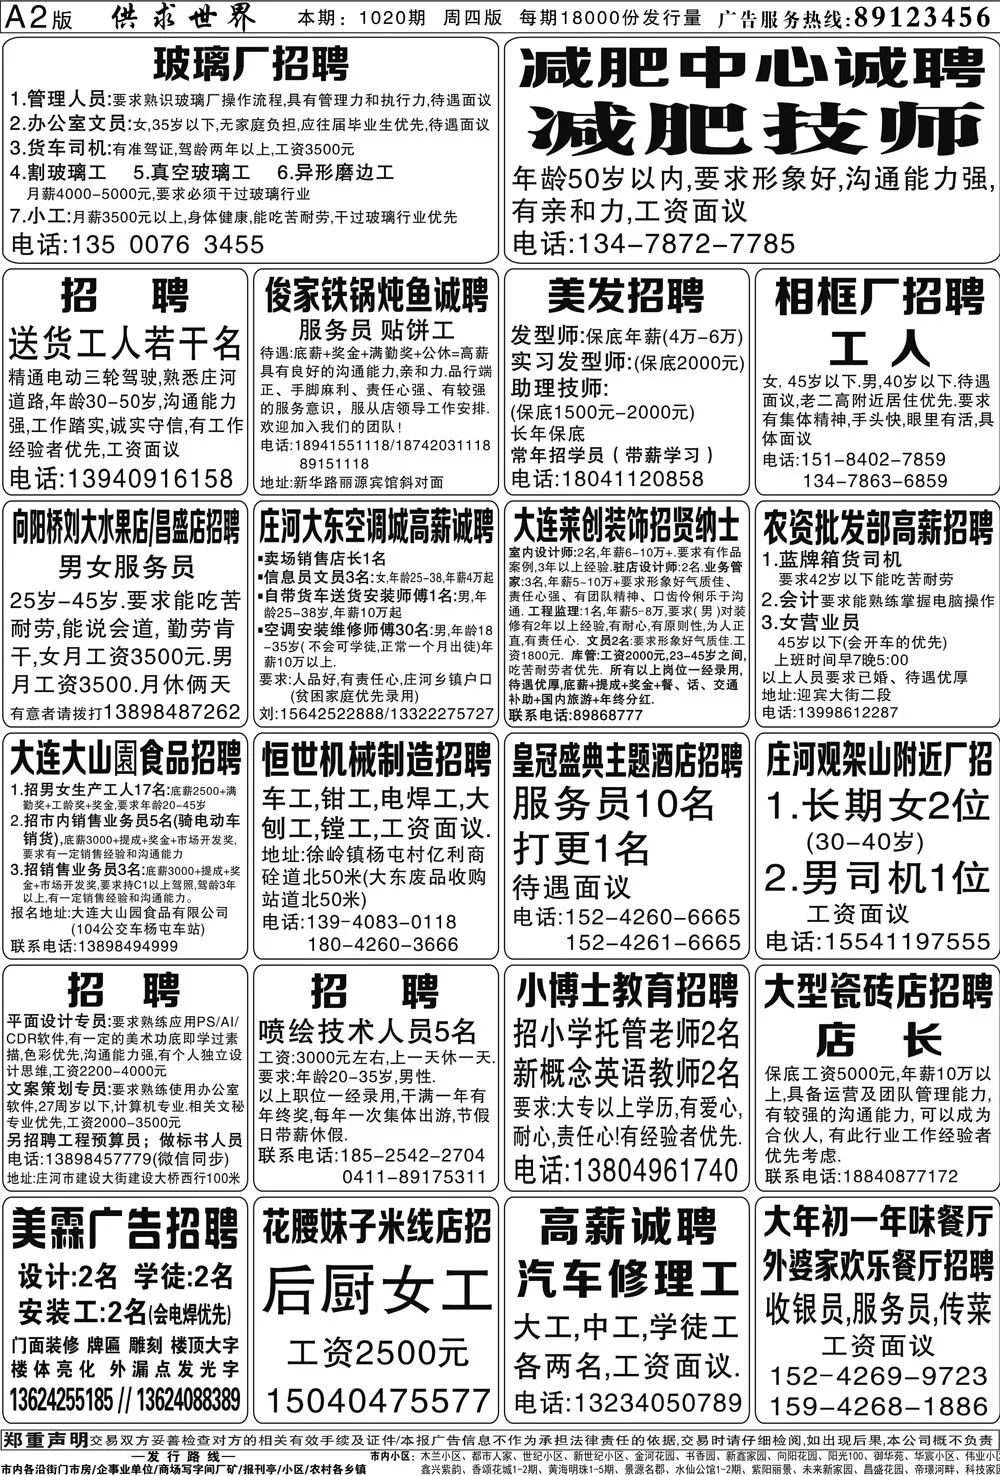 庄河供求世界报纸2月21日[第1020期]报纸阅读(附招聘)